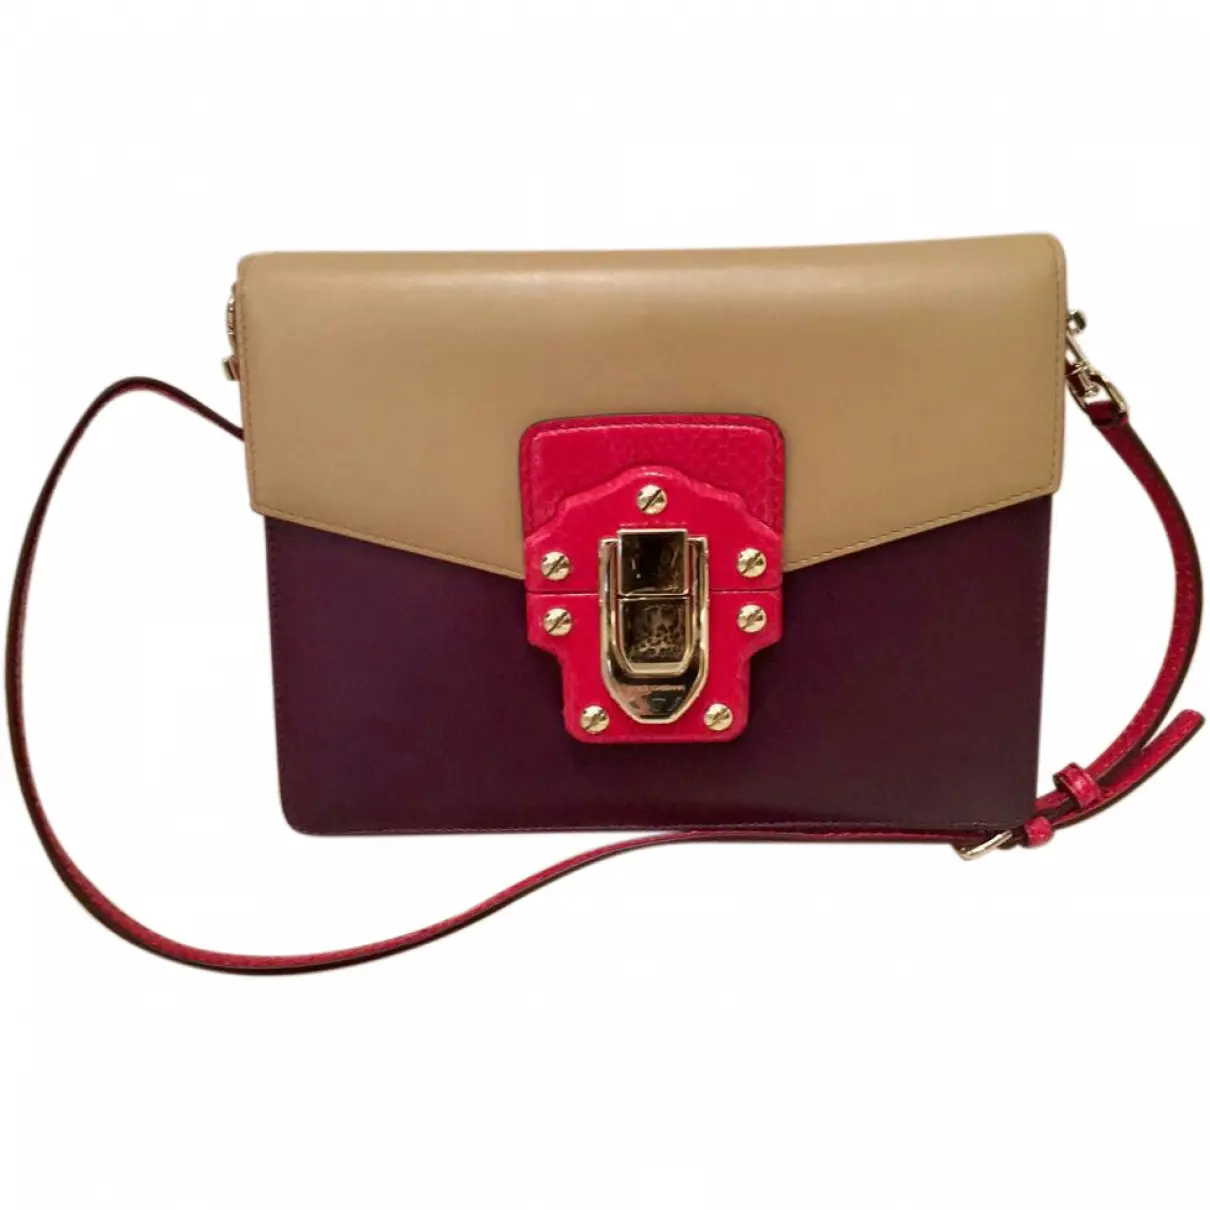 Lucia leather handbag Dolce & Gabbana